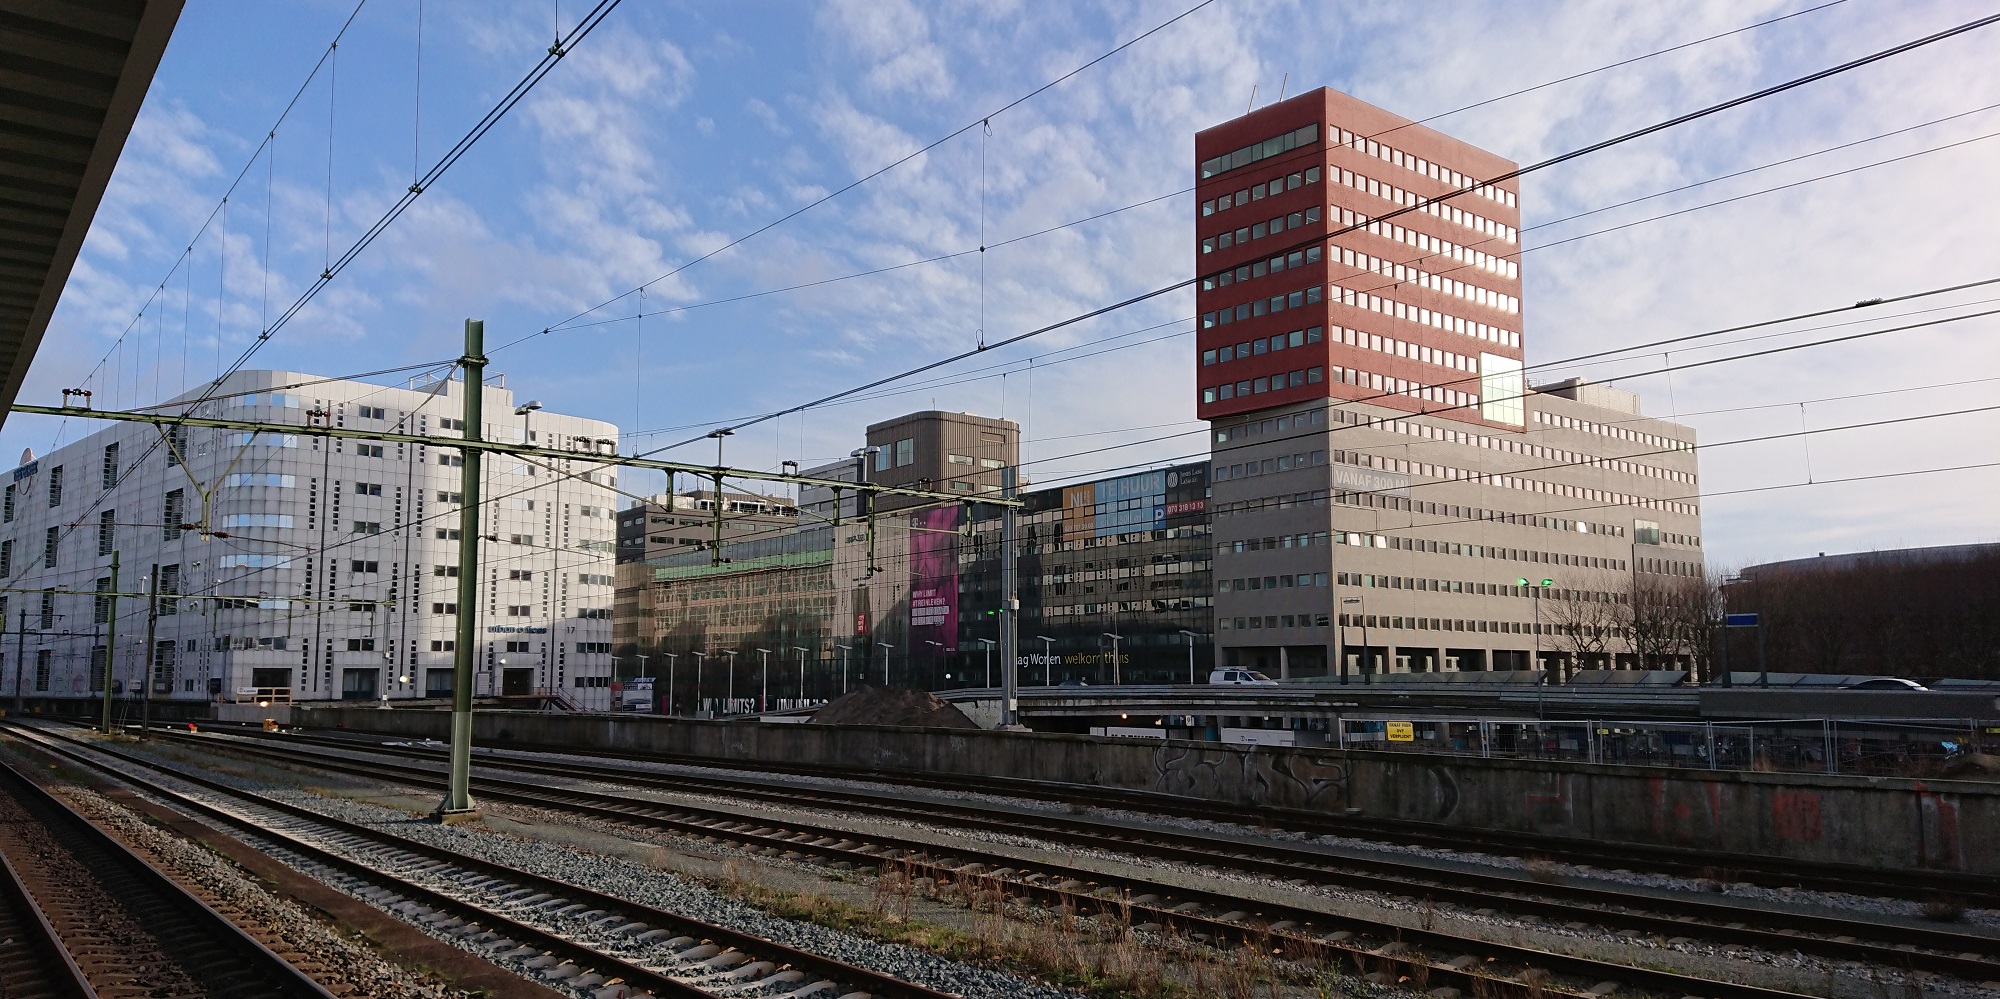 hoogbouw bij station Hollands Spoor